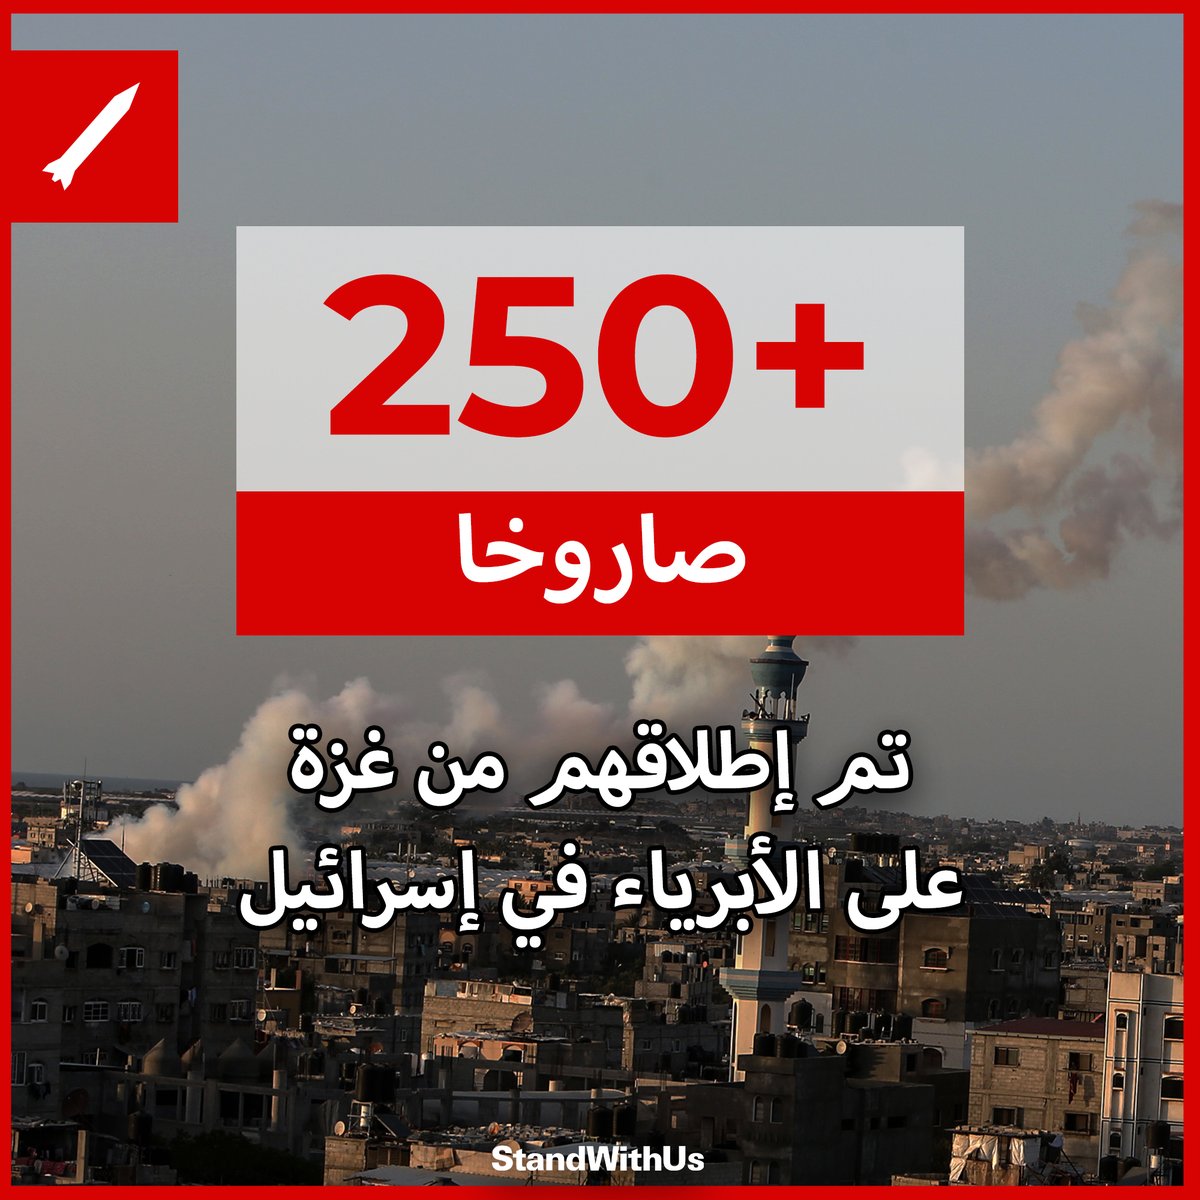 أكثر من 250 صاروخا أطلقهم الإرهابيون من قطاع غزة باتجاه الإسرائيليين الأبرياء منذ الأمس.
إسرائيل لديها…